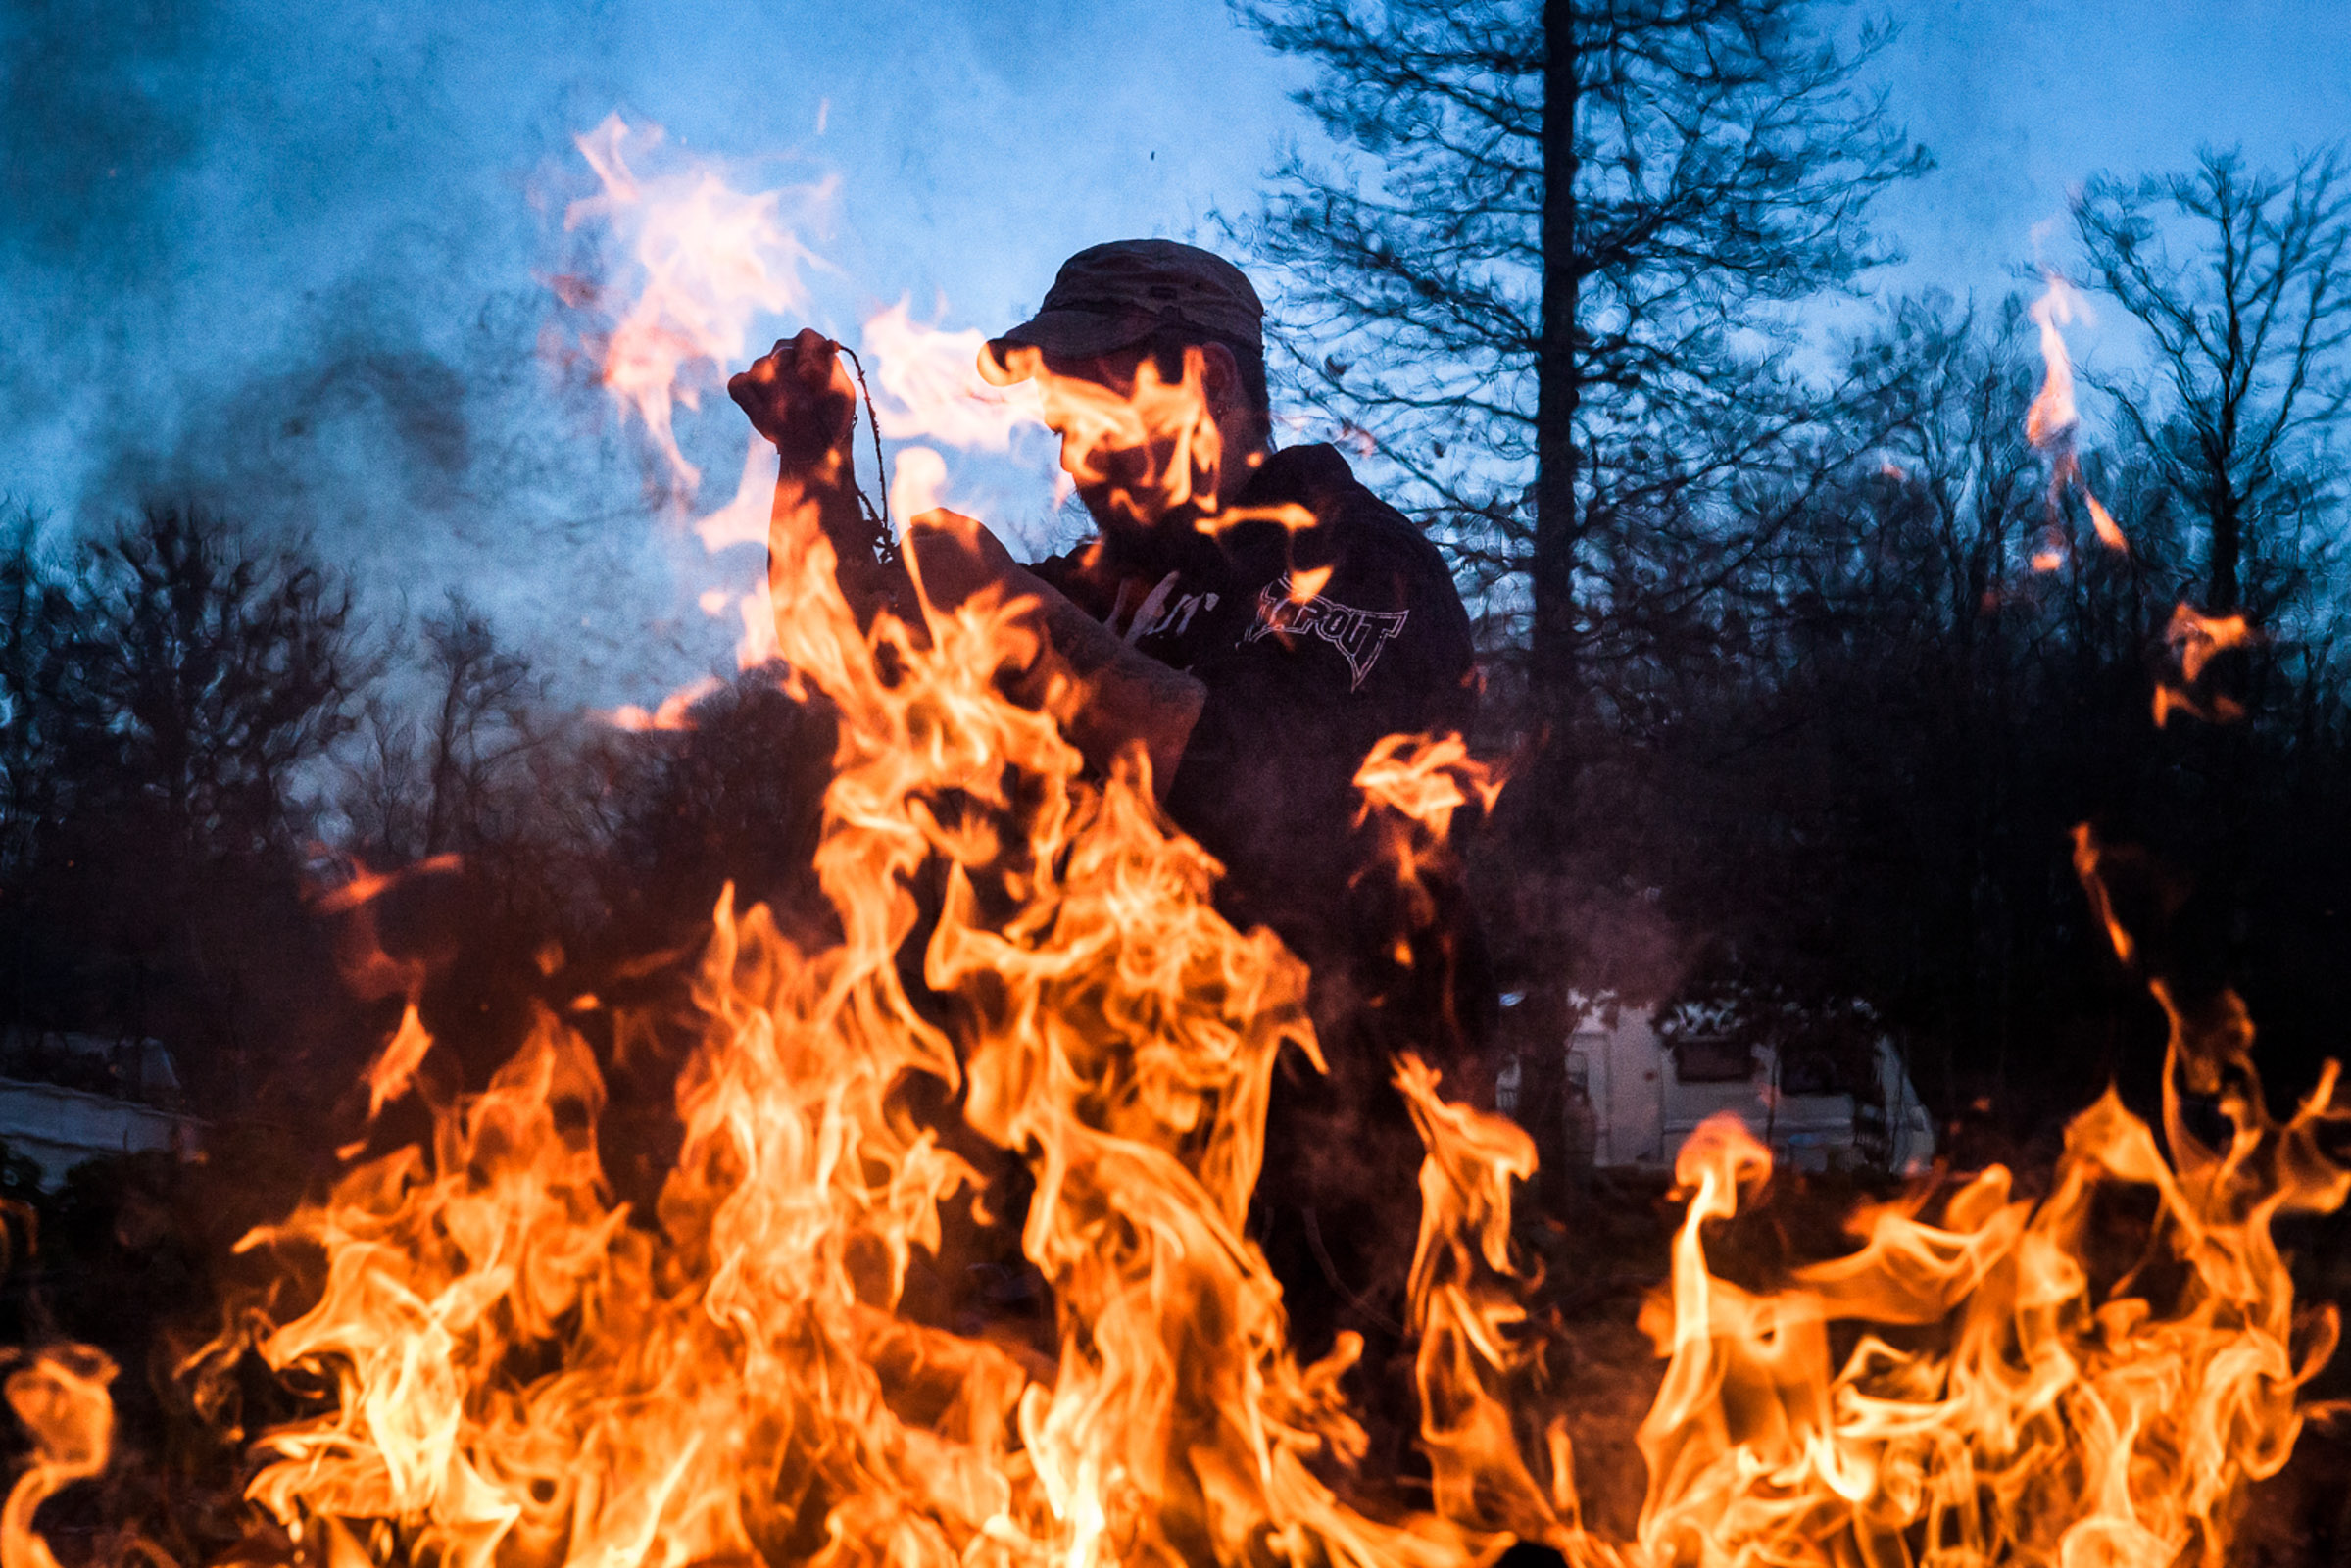 Villebeon, 12 Janvier 2014. Rémy brûle les poubelles.

Villebeon, 12 January 2014. Remy burns the garbage.